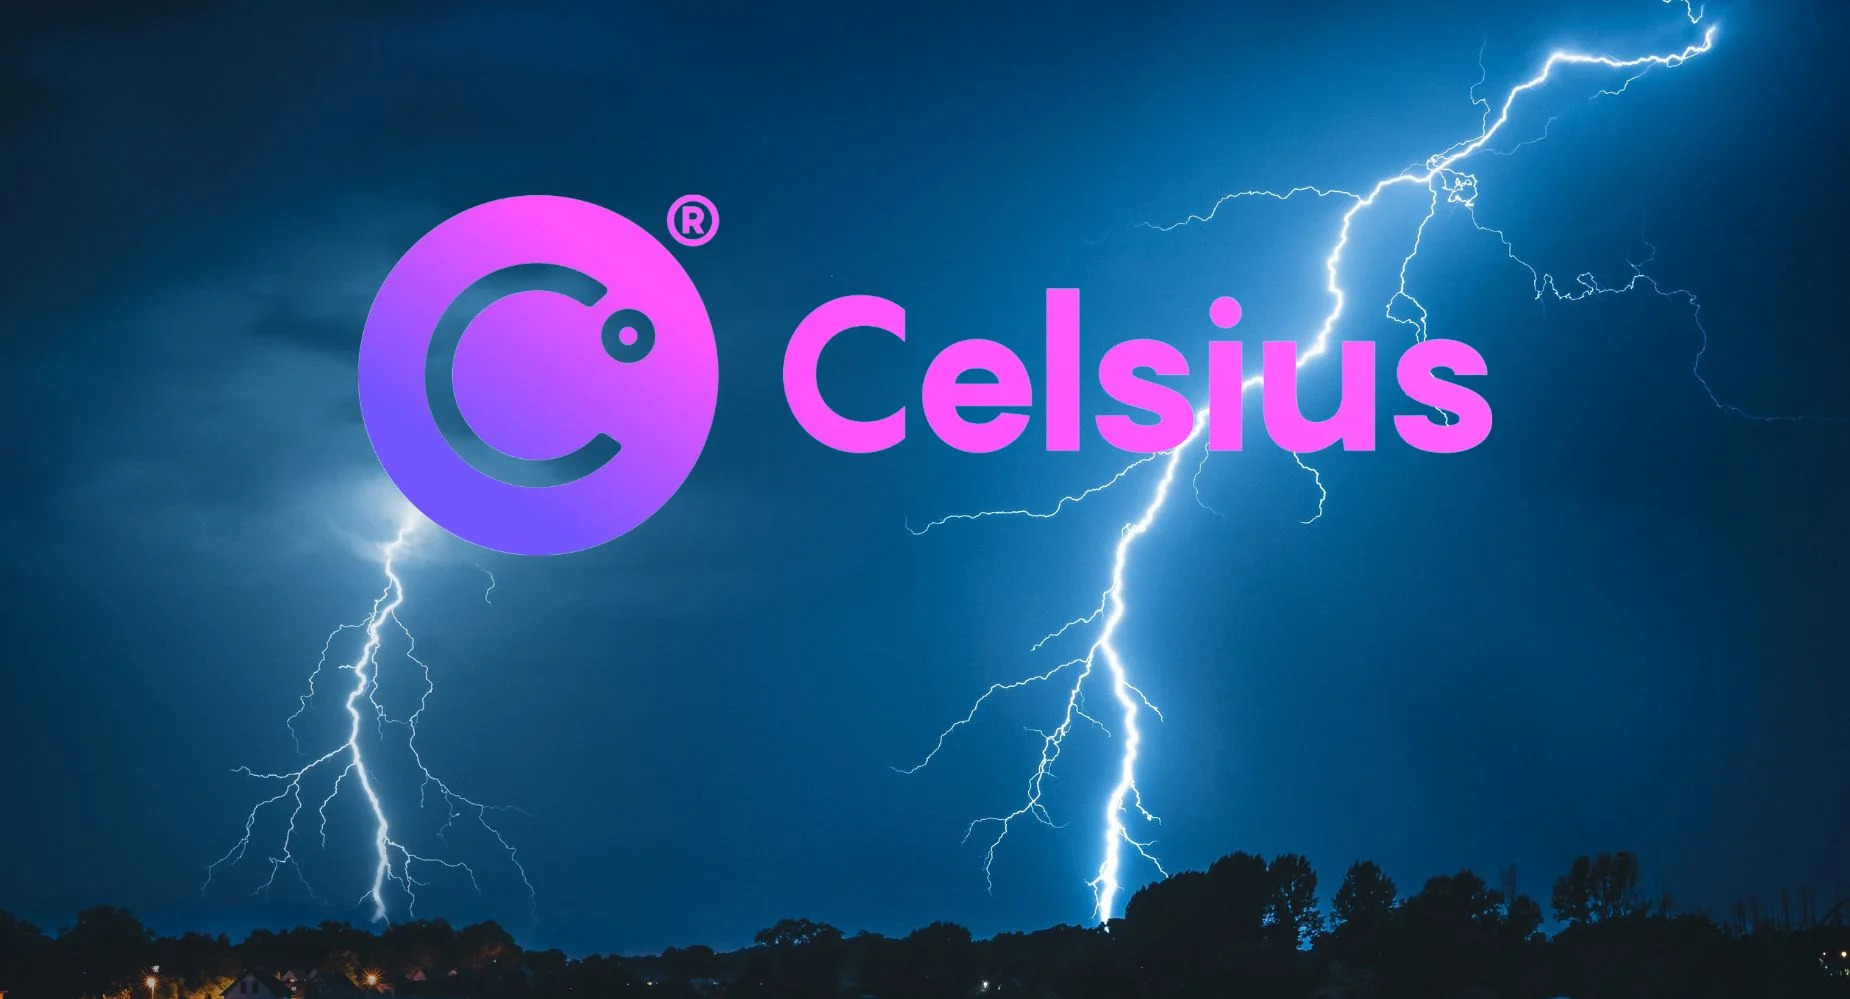 Celsius đưa ra nhiều giải pháp mới trong nỗ lực giảm thiểu tổn thất cho người dùng